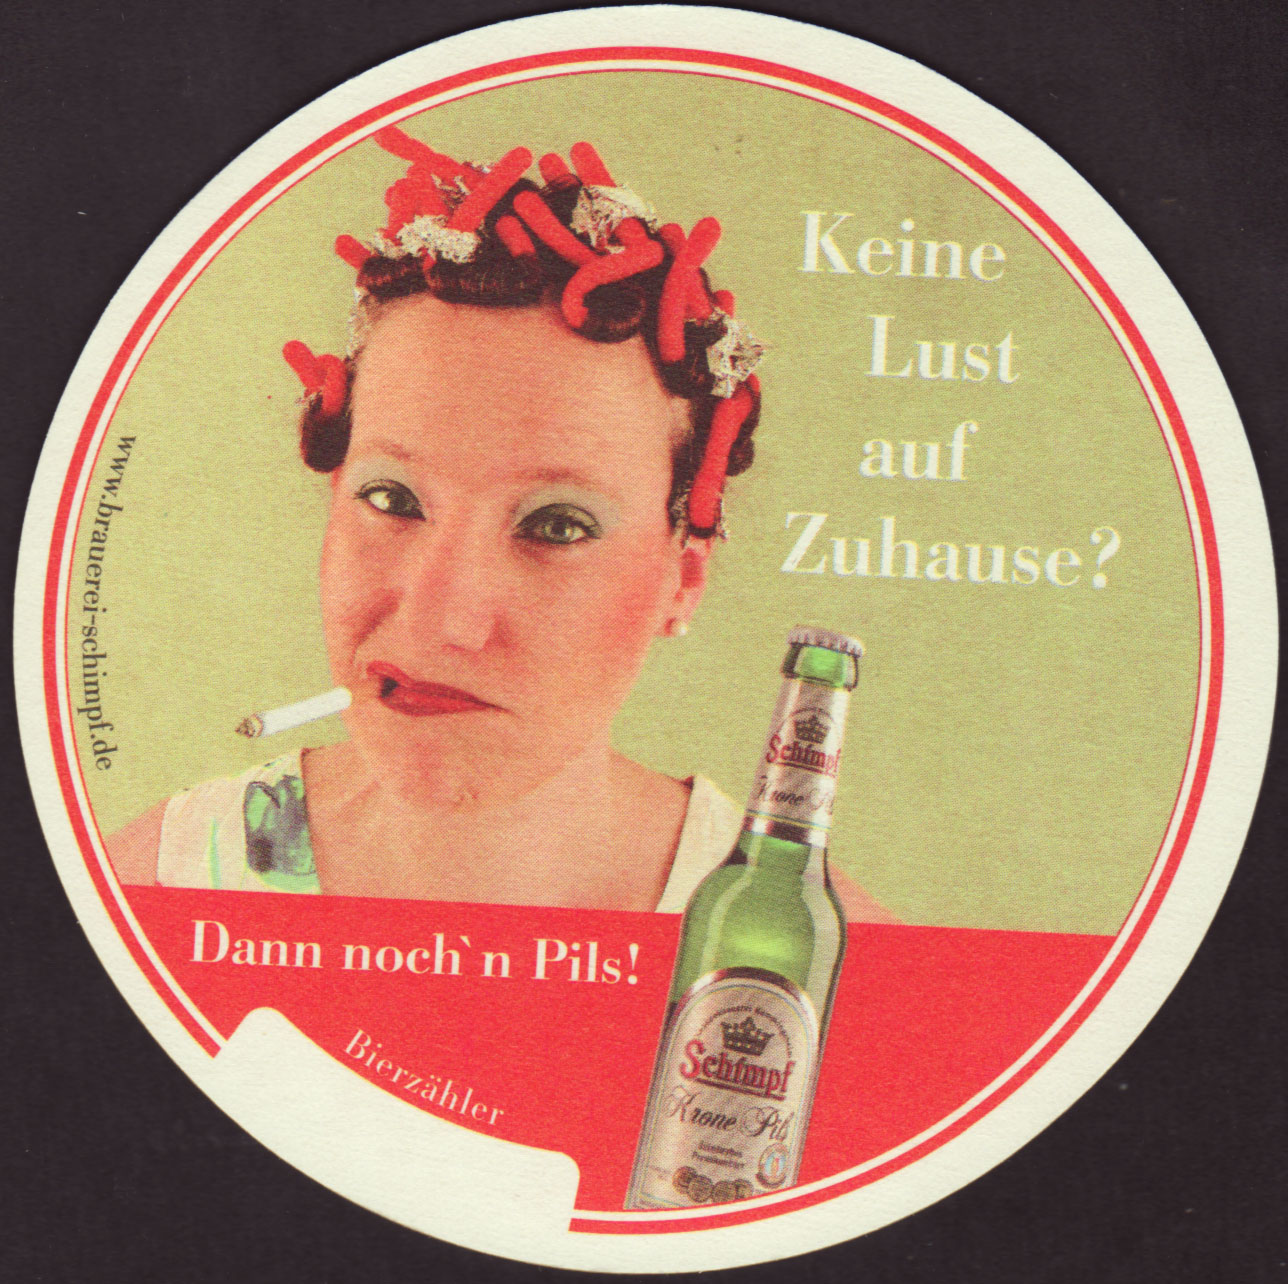 http://www.beer-coasters.eu/coasters/kronenbrauerei-<b>alfred-schimpf</b>-2-zadek. ... - kronenbrauerei-alfred-schimpf-2-zadek